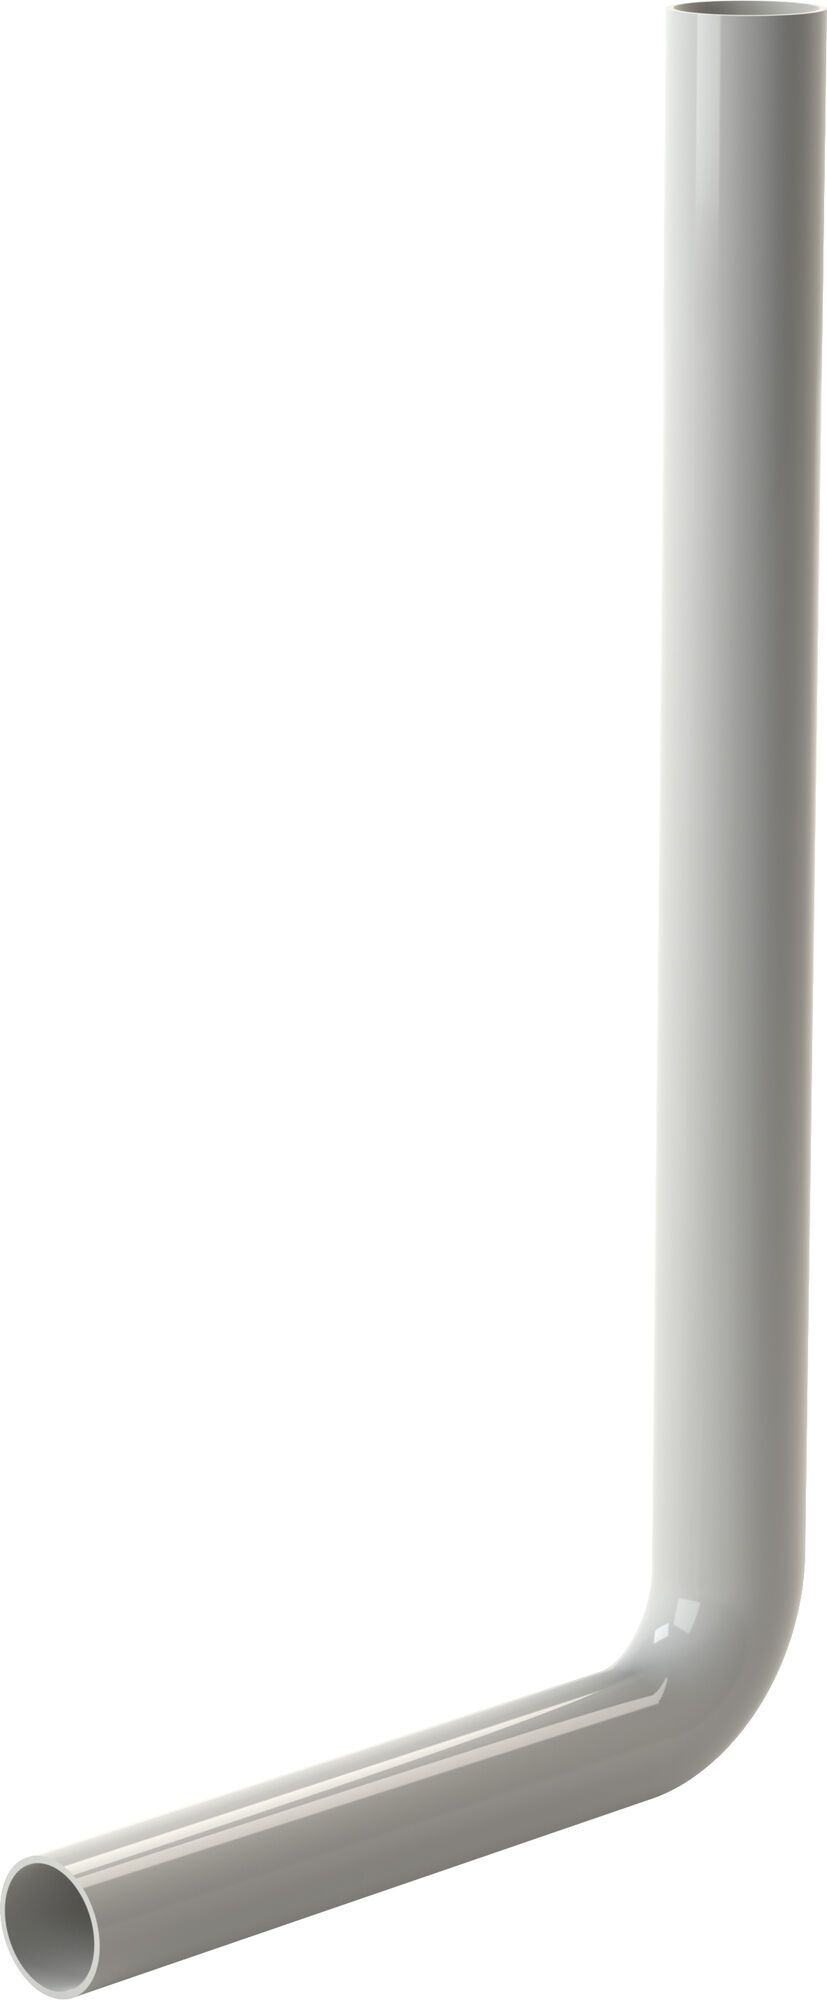 Flush pipe elbow 550 x 300 mm, white